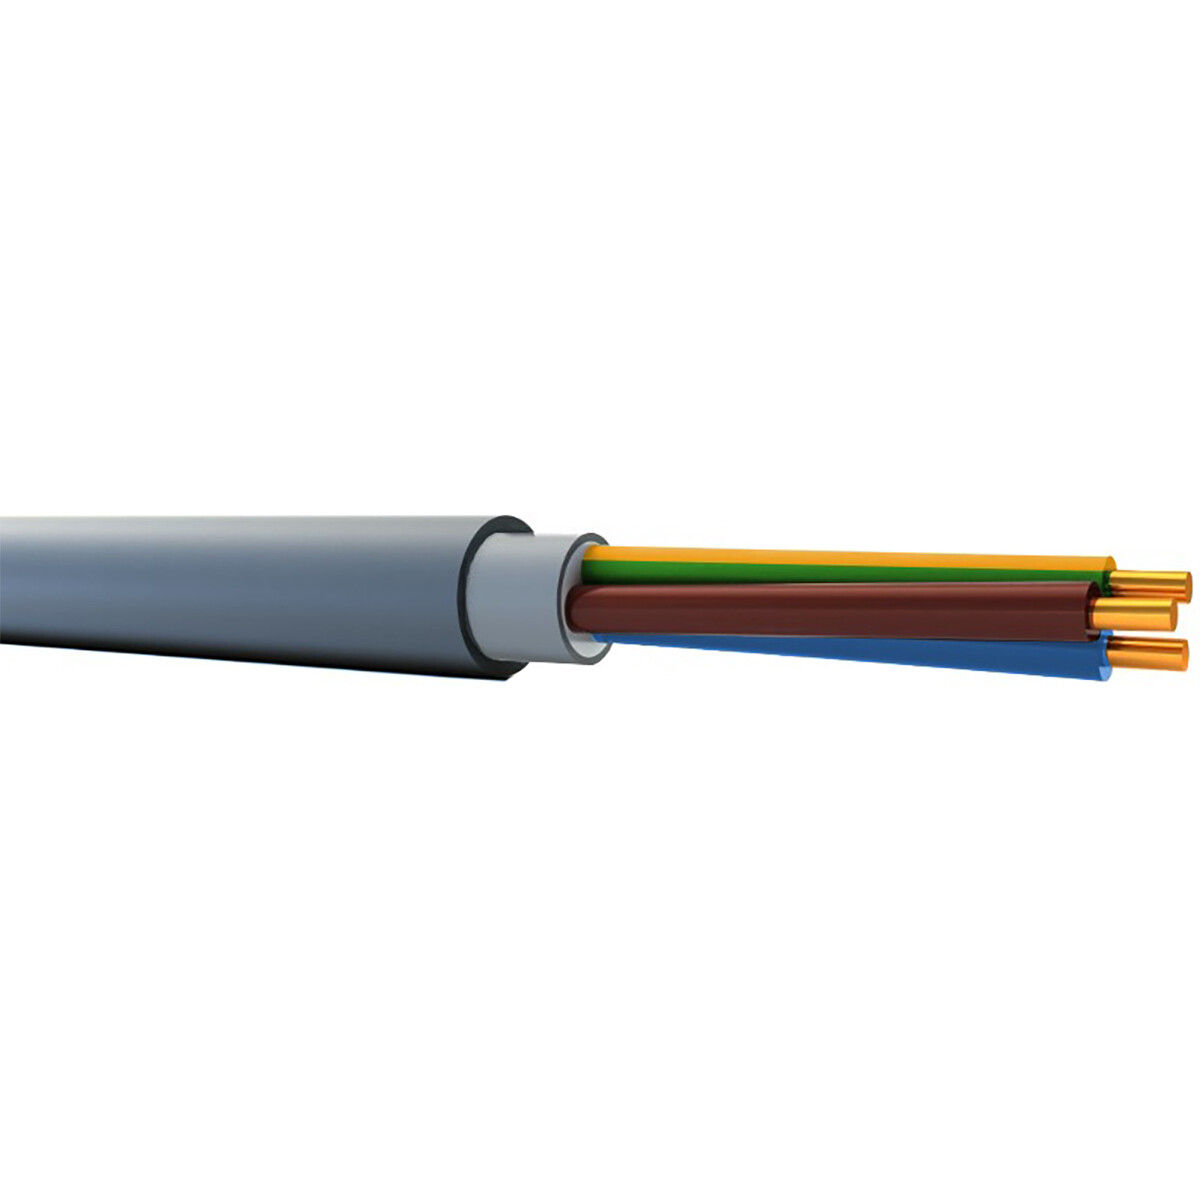 YMVK Kabel - Buitenkabel - 3x2.5mm - 3 Aderig - Grijs - 10 Meter